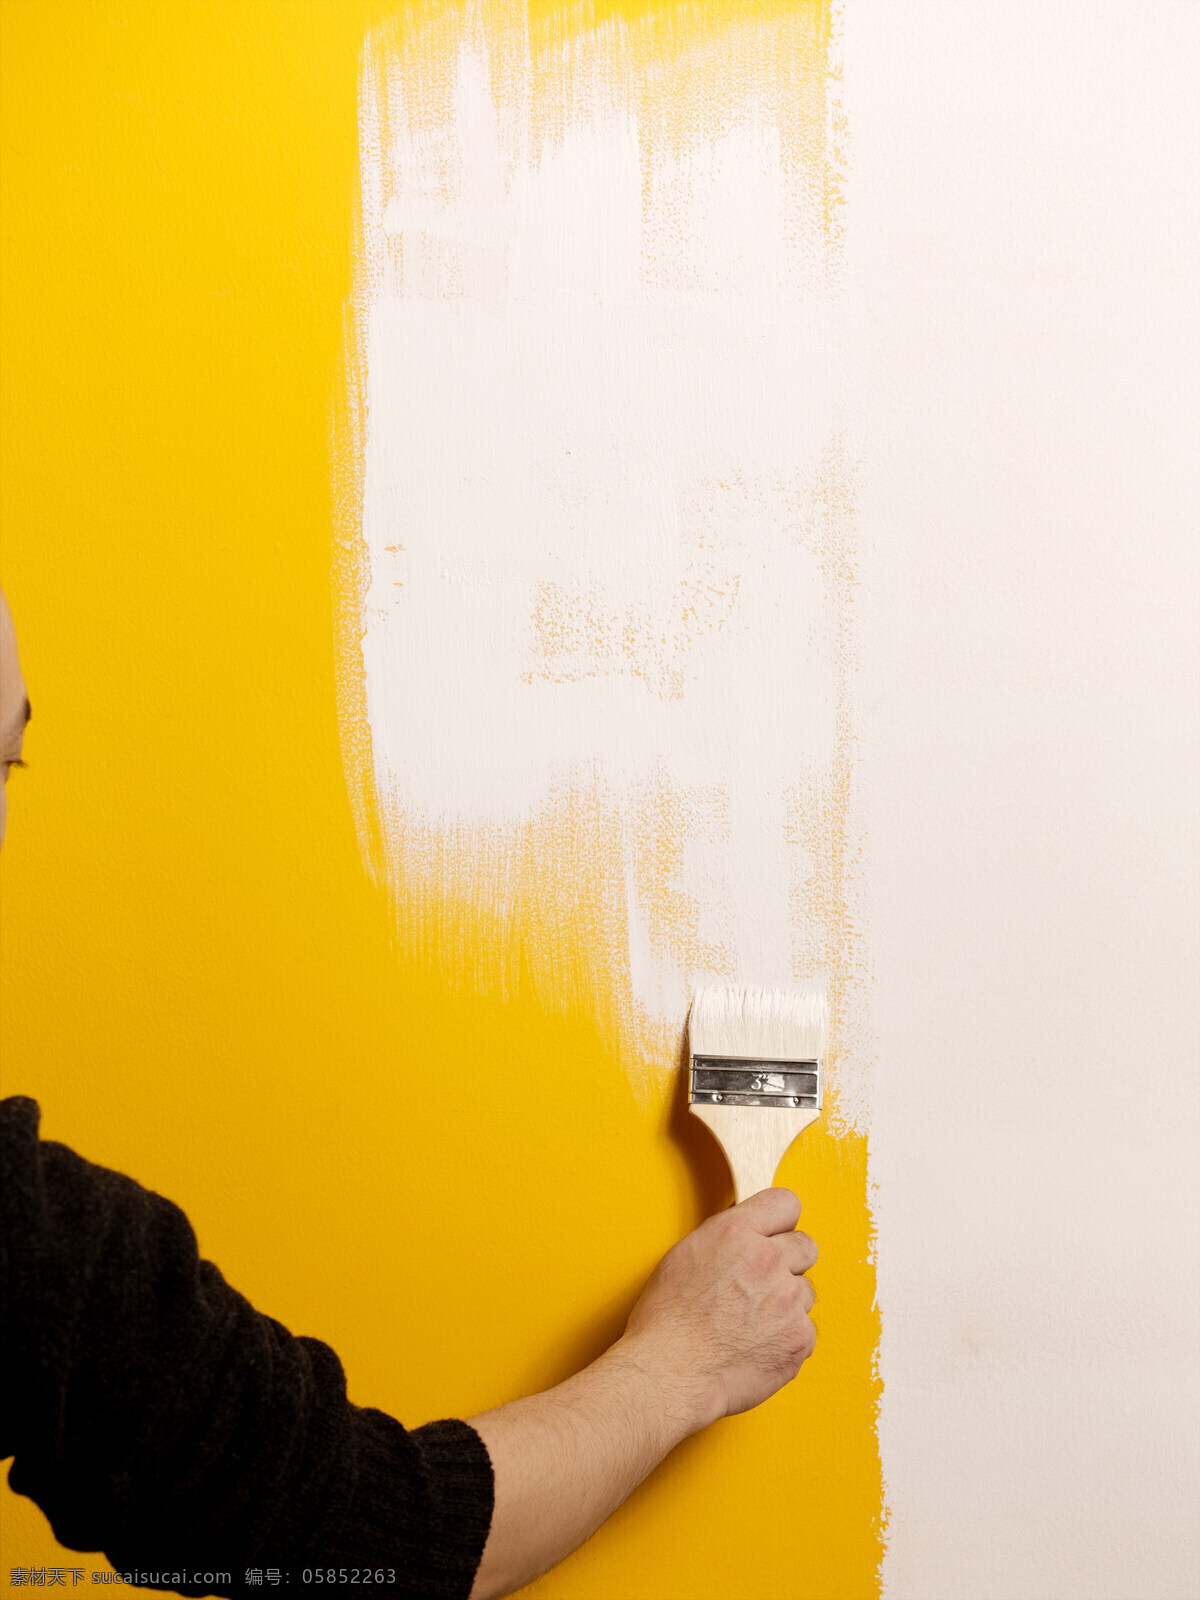 油漆场景 刷漆 刷油漆 油漆 白漆 刷子 黄色墙 装修 室内摄影 建筑园林